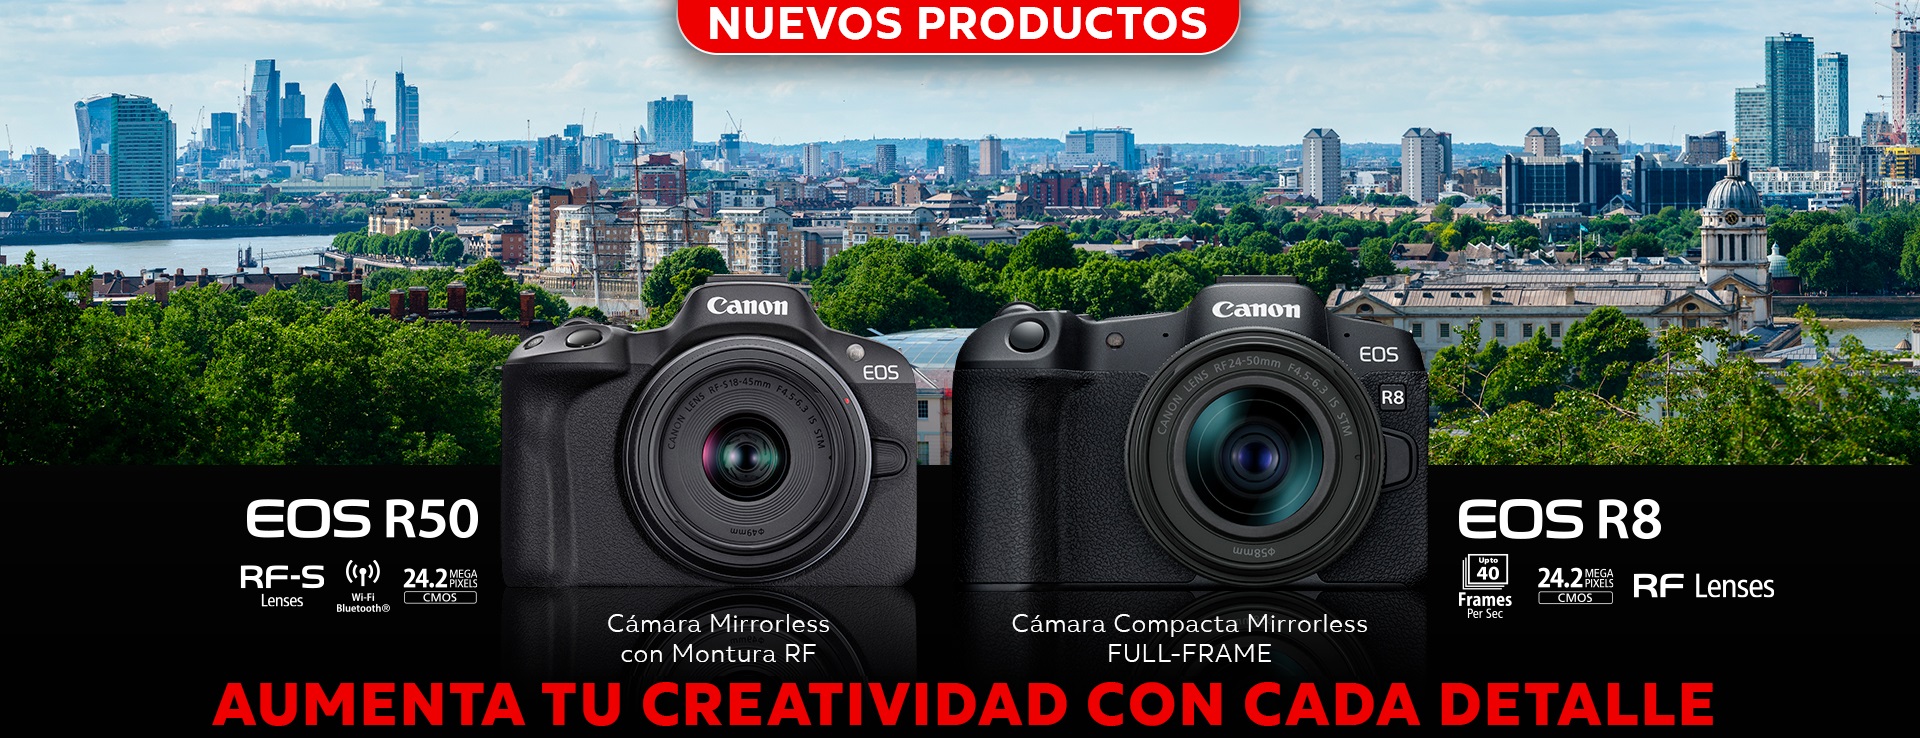 Canon Mexicana Líder en Solución de Imagen